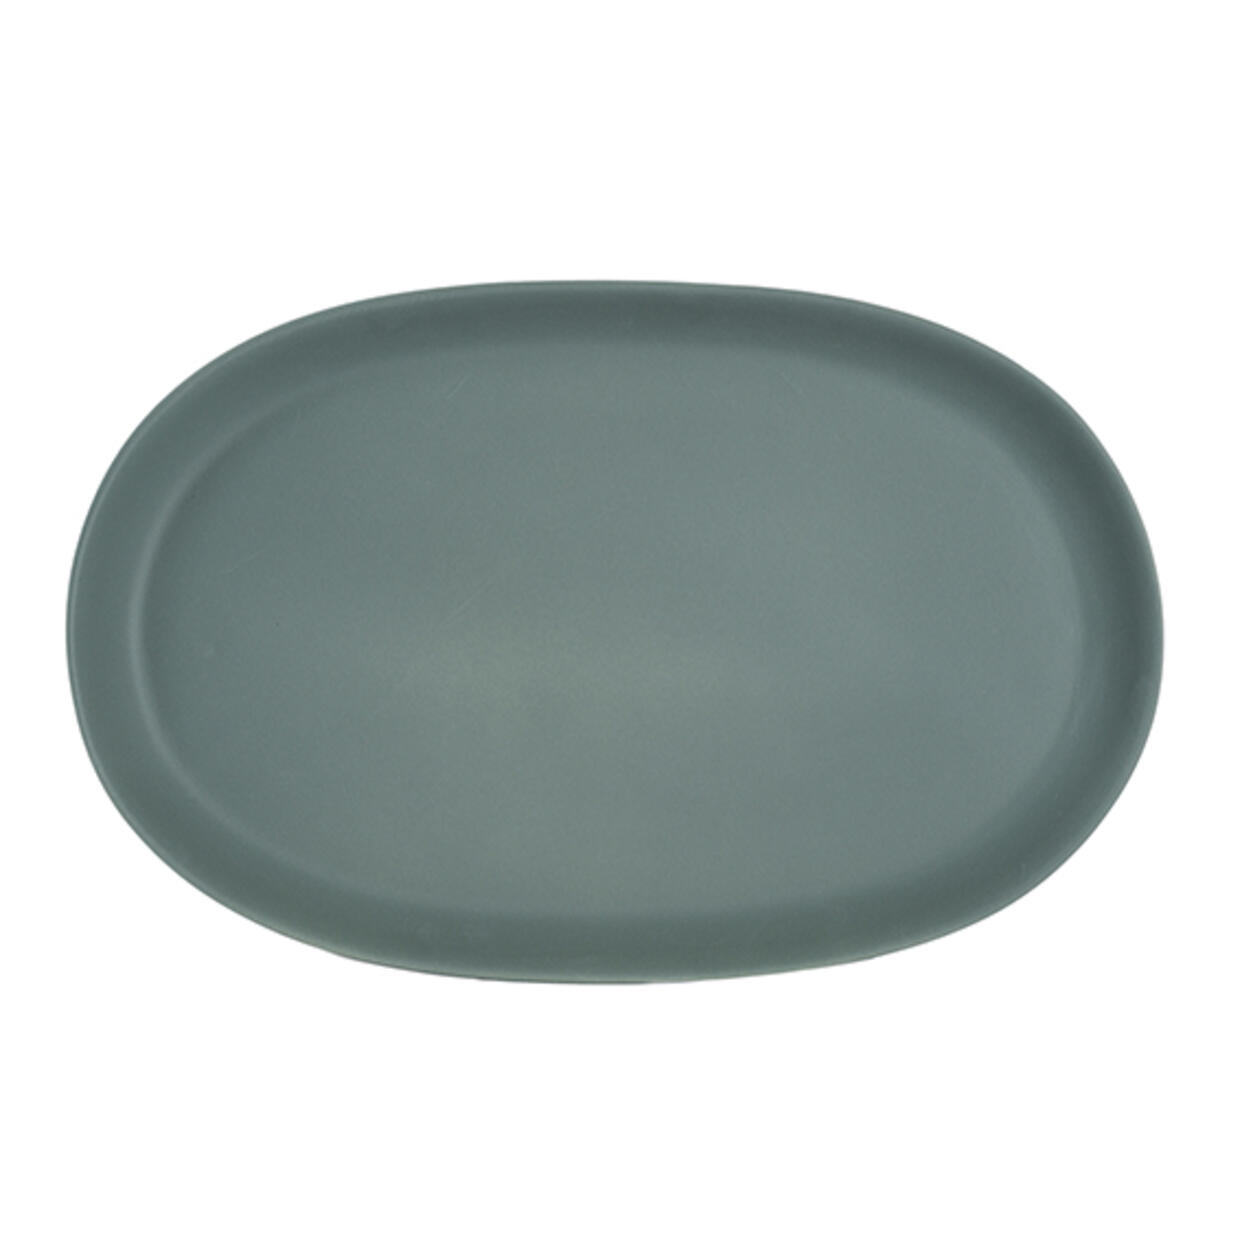 oval dish xl jardin de maguelone kale ceramic manufacturer